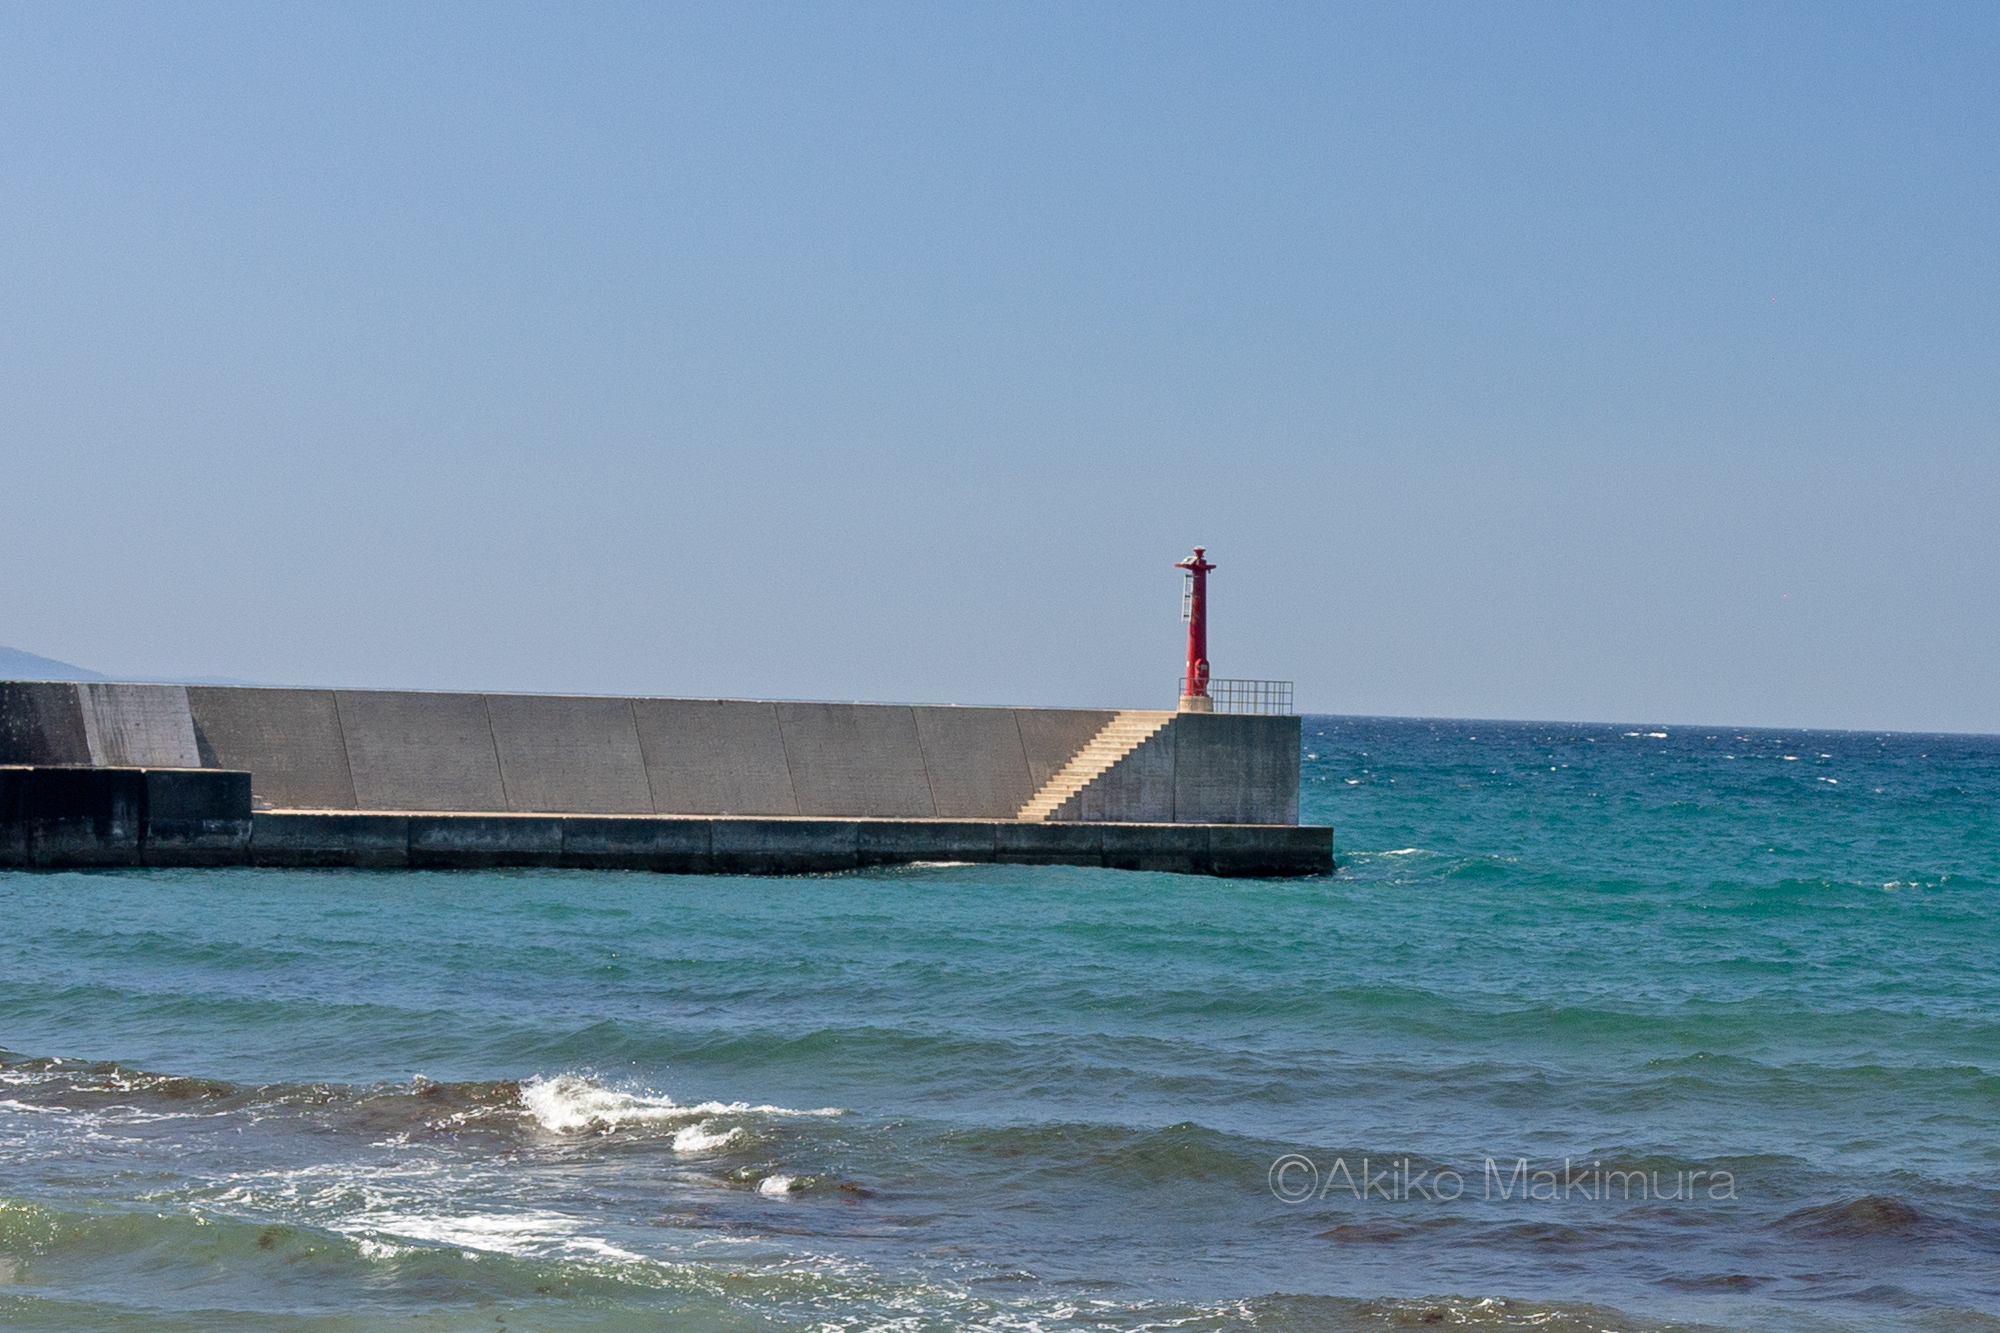 防波堤の小さな灯台は安全入港の目印